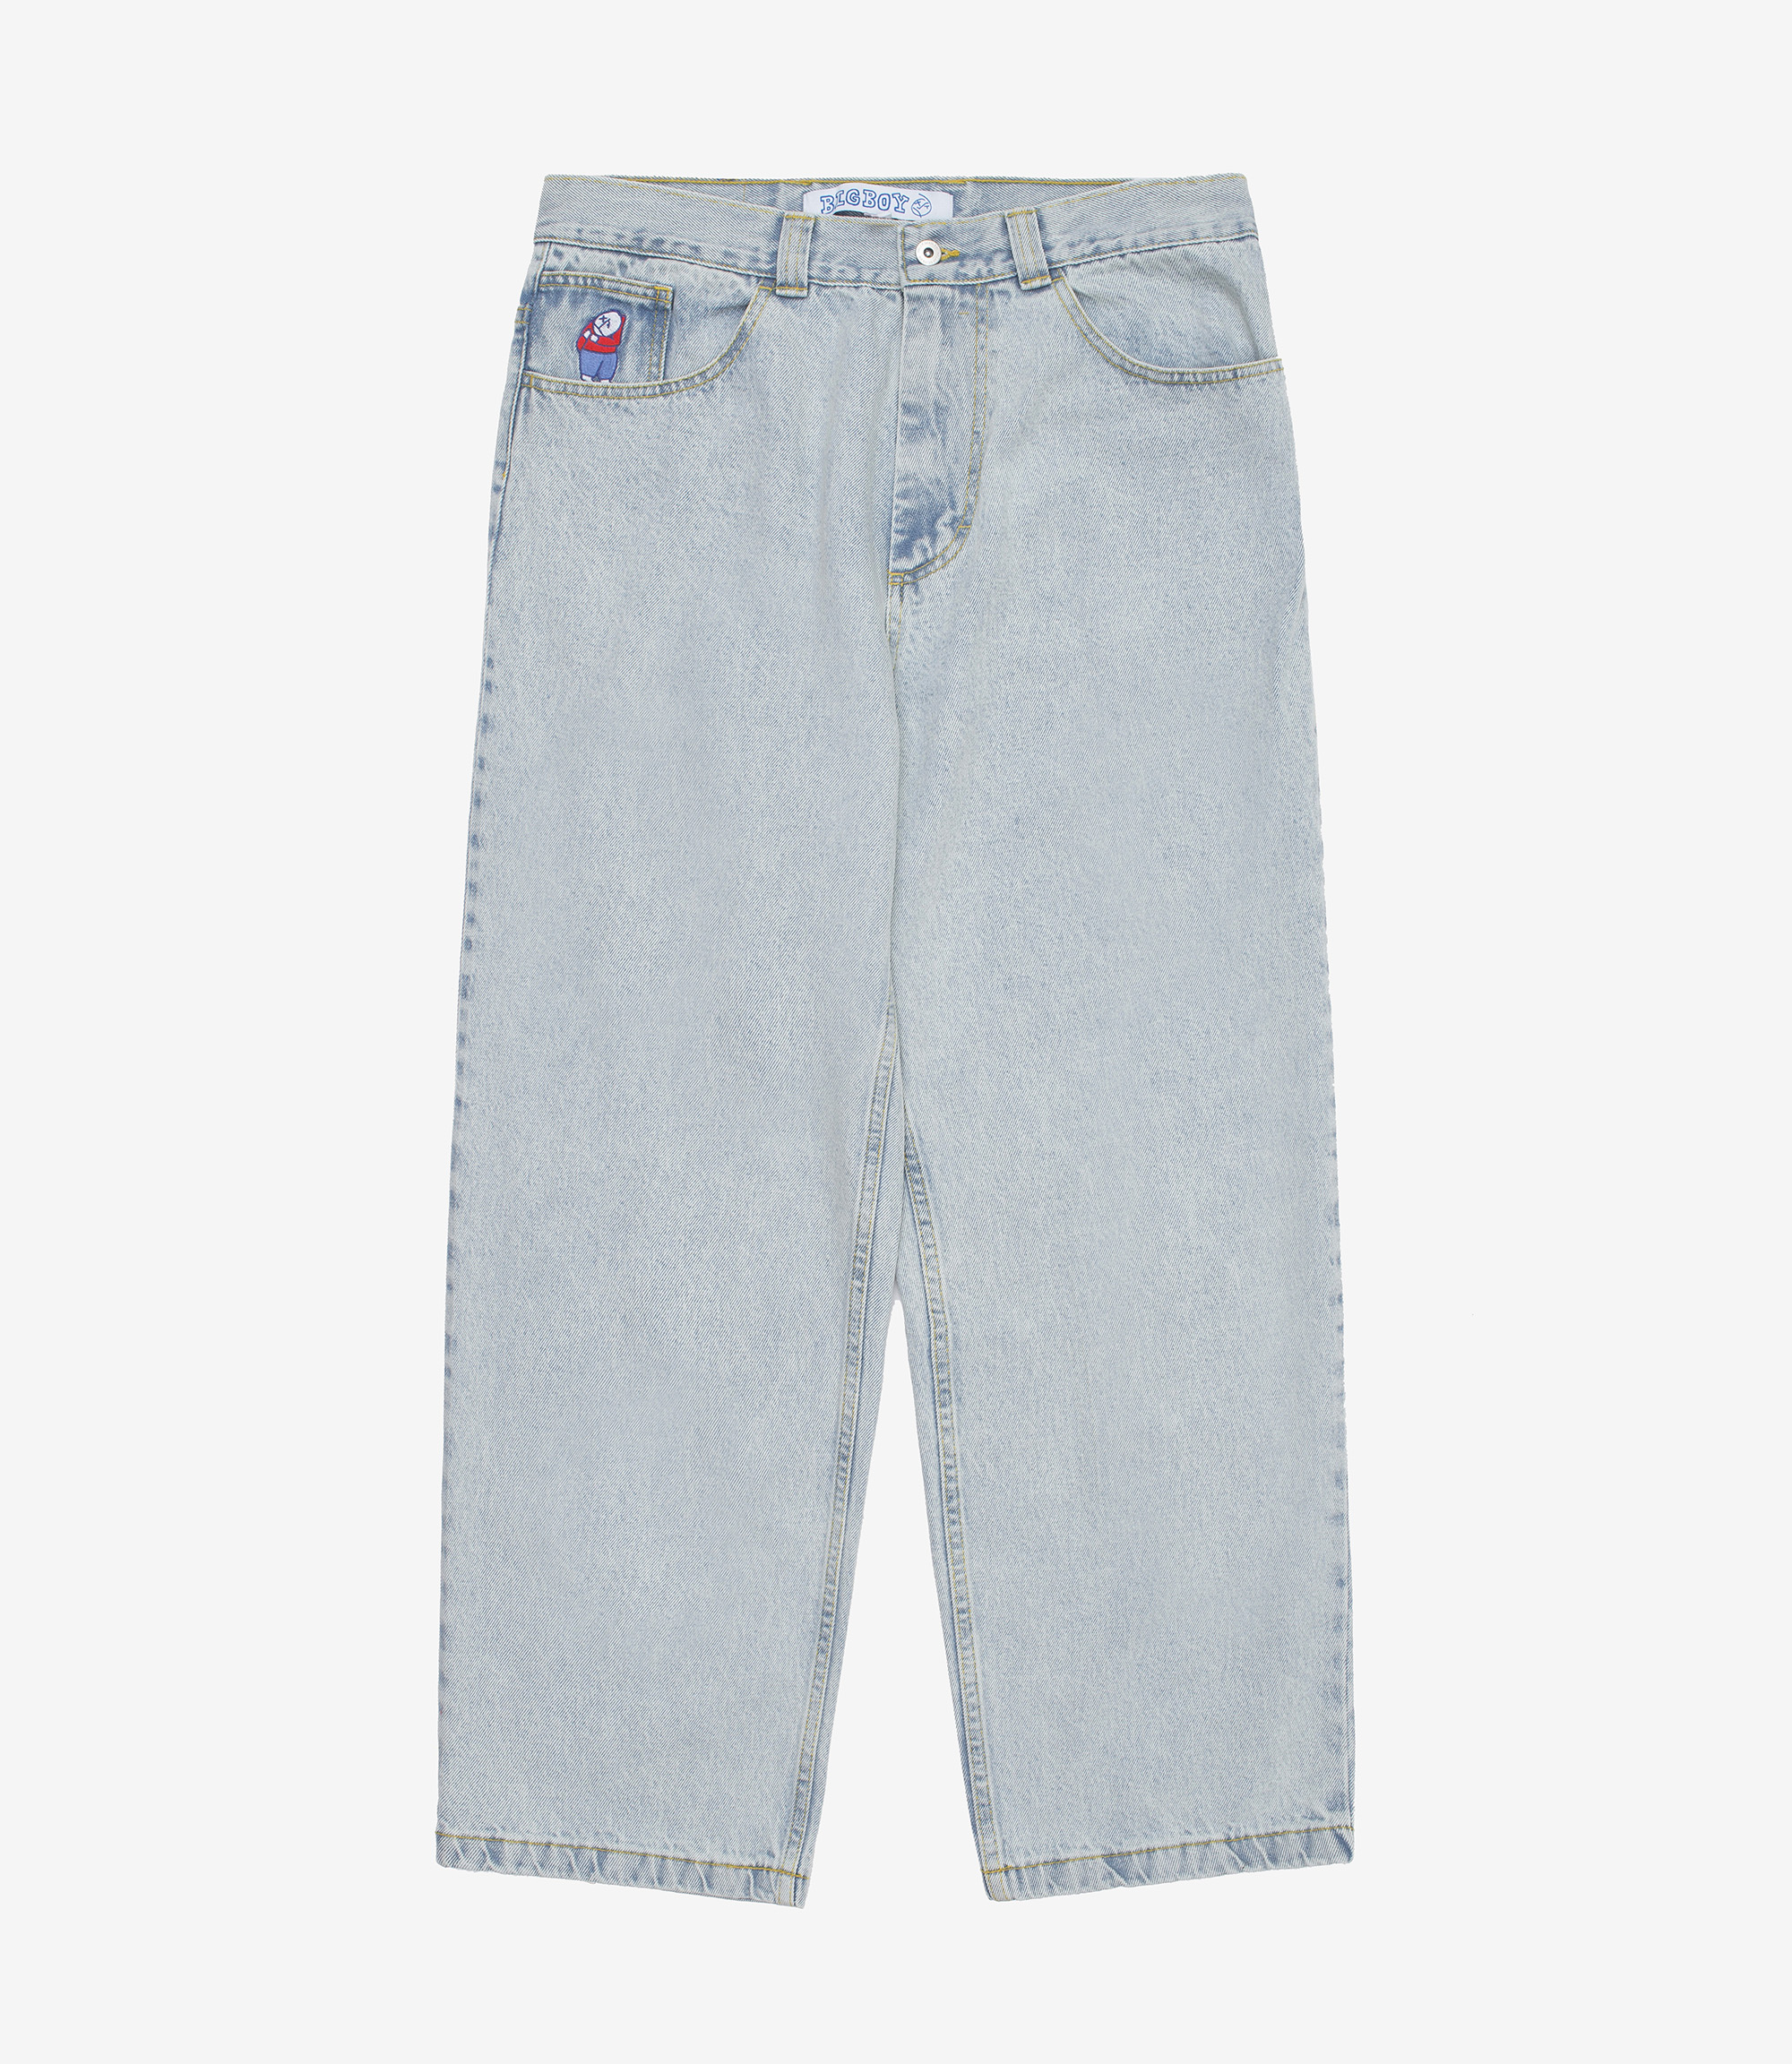 Shop Polar Skate Co Big Boy Jeans Light Blue at itk online store